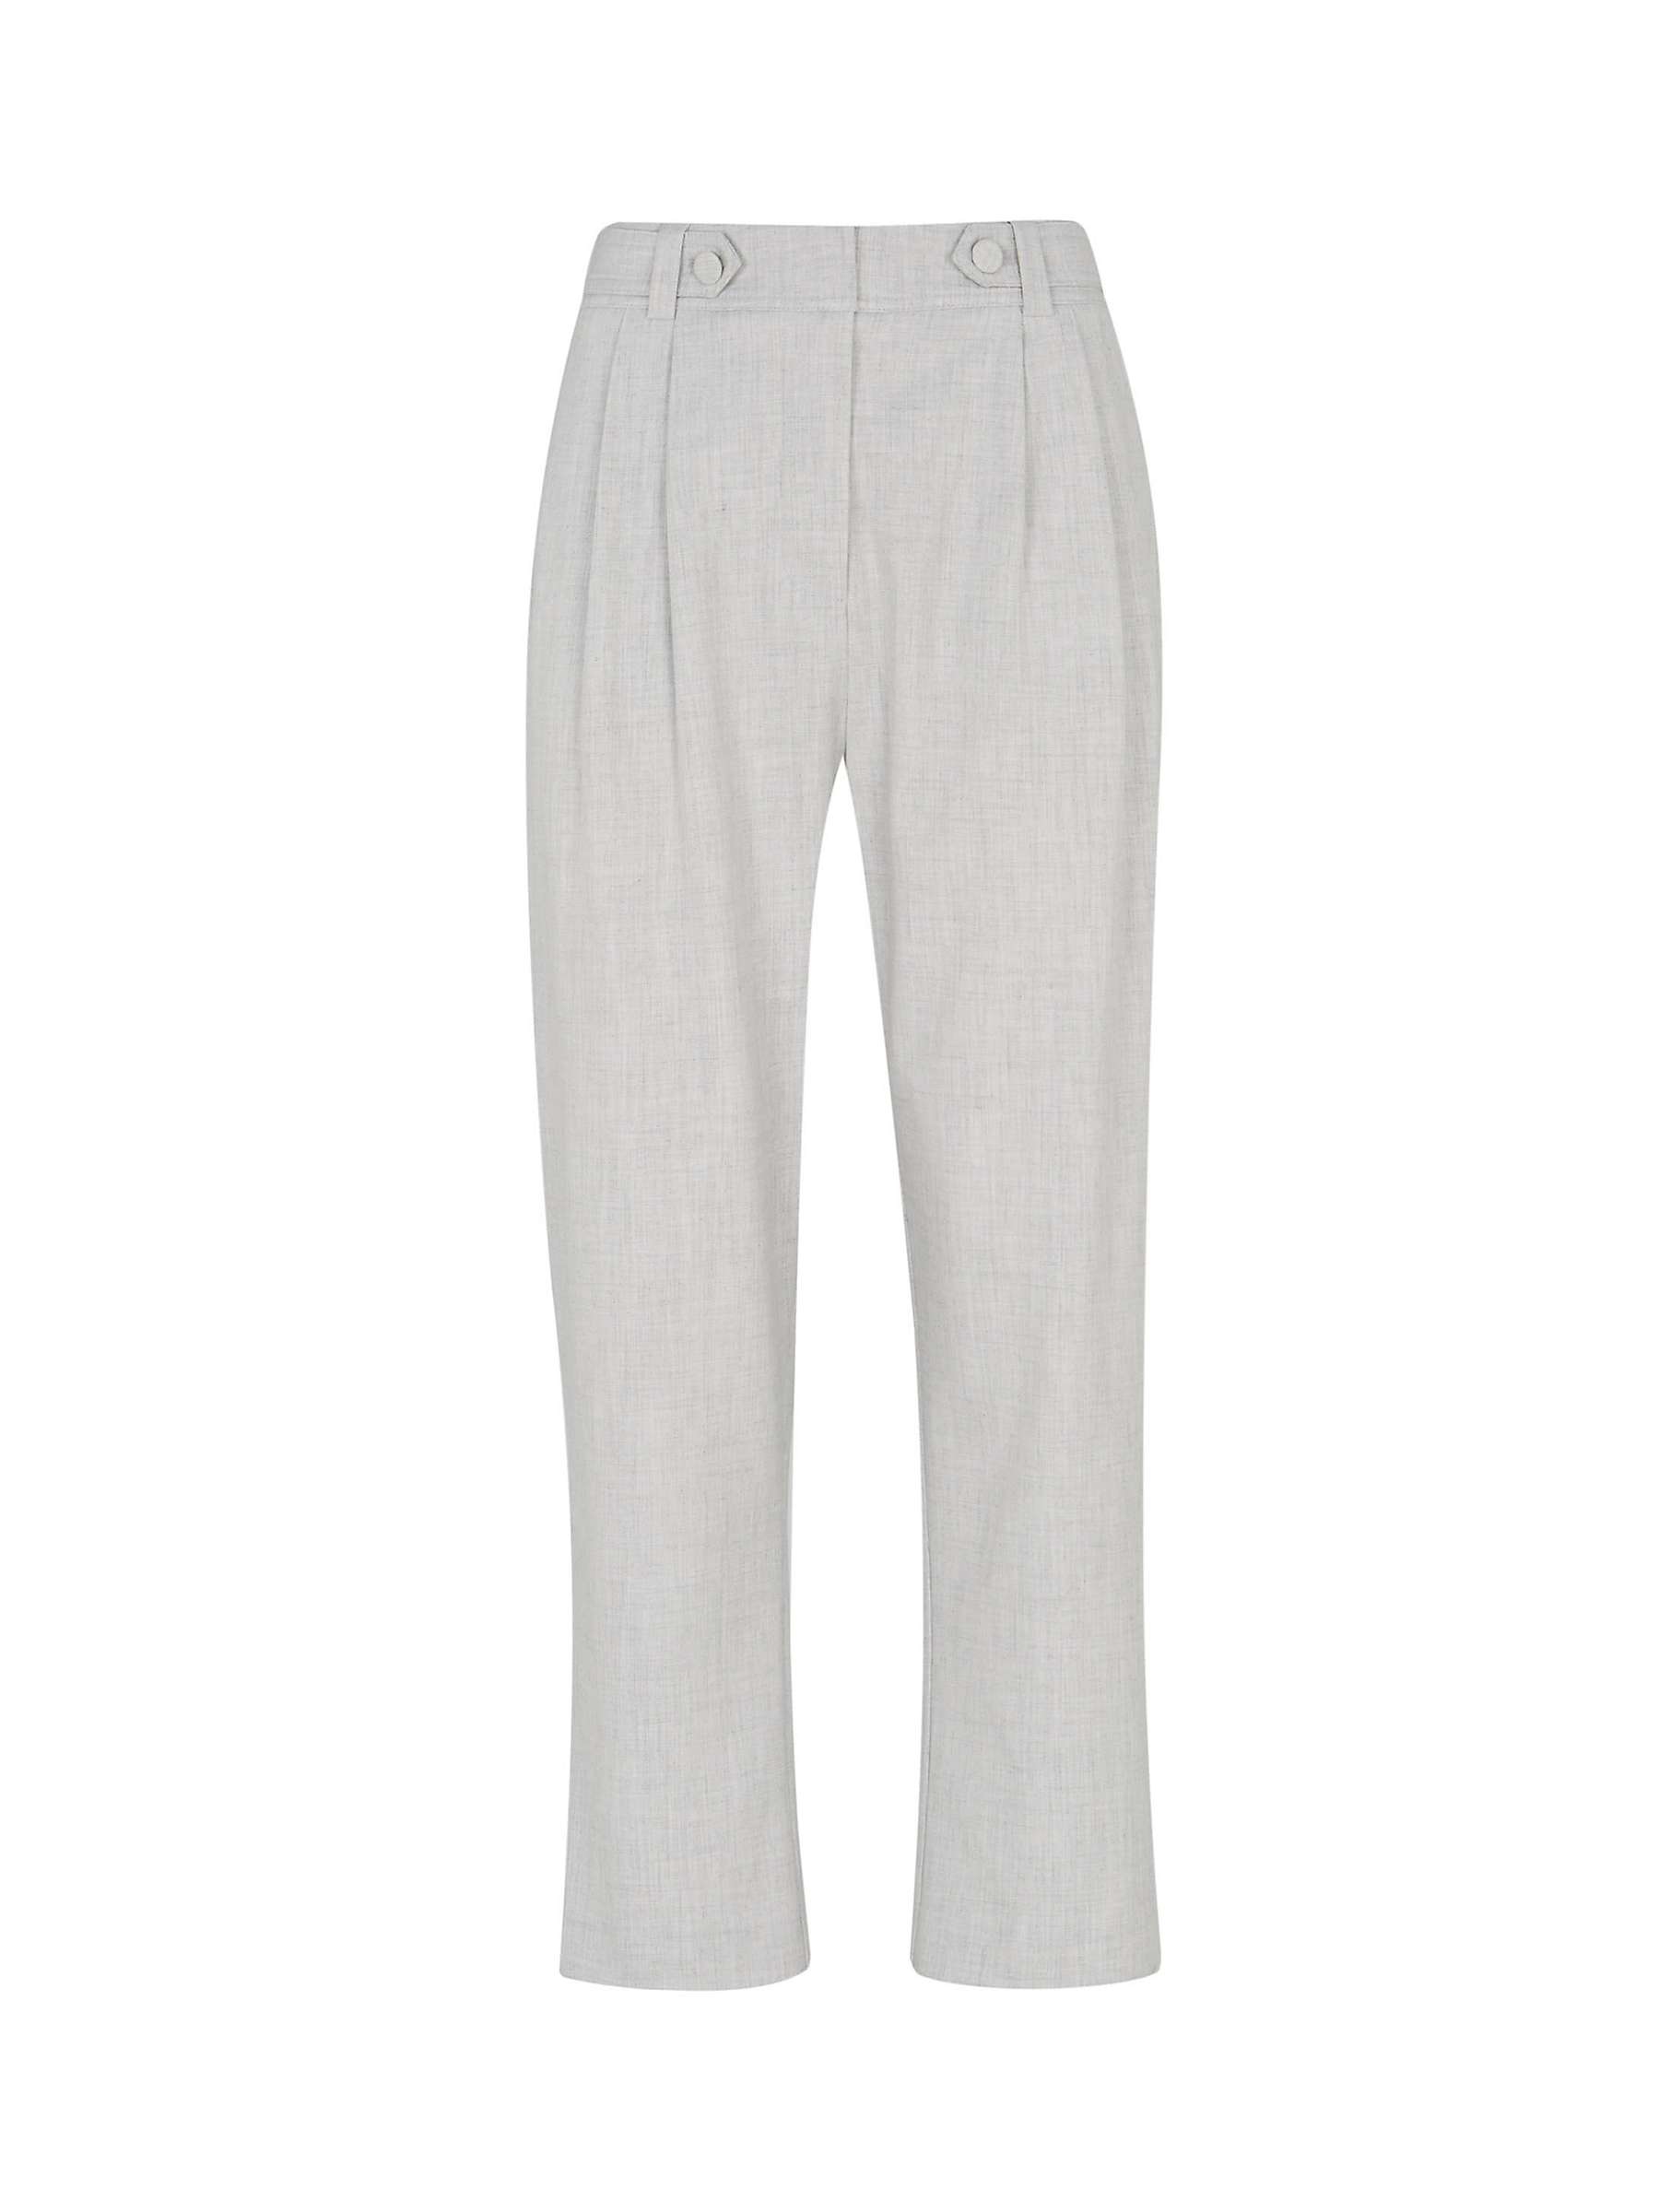 Buy Mint Velvet Tapered Trousers, Light Grey Online at johnlewis.com